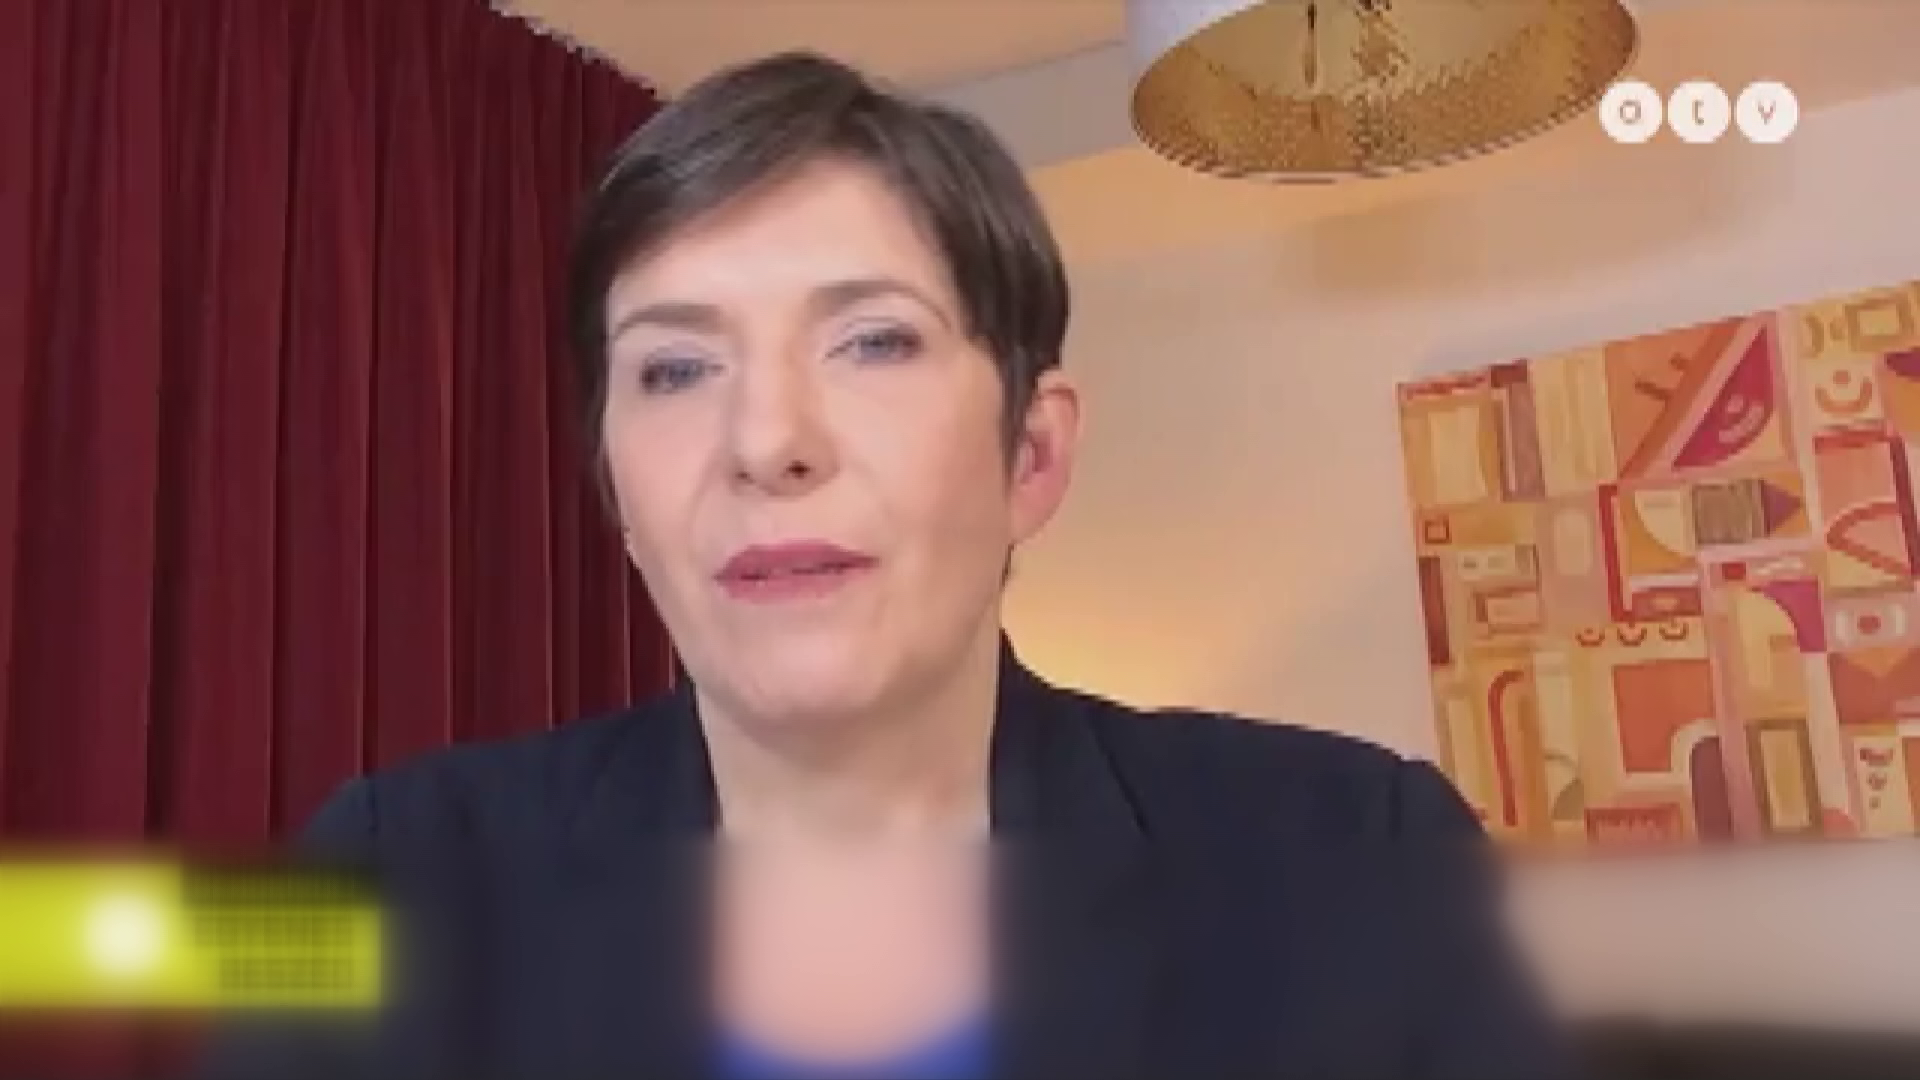 Baloldali politikusok beszéltek Novák Katalin lemondásáról + videó